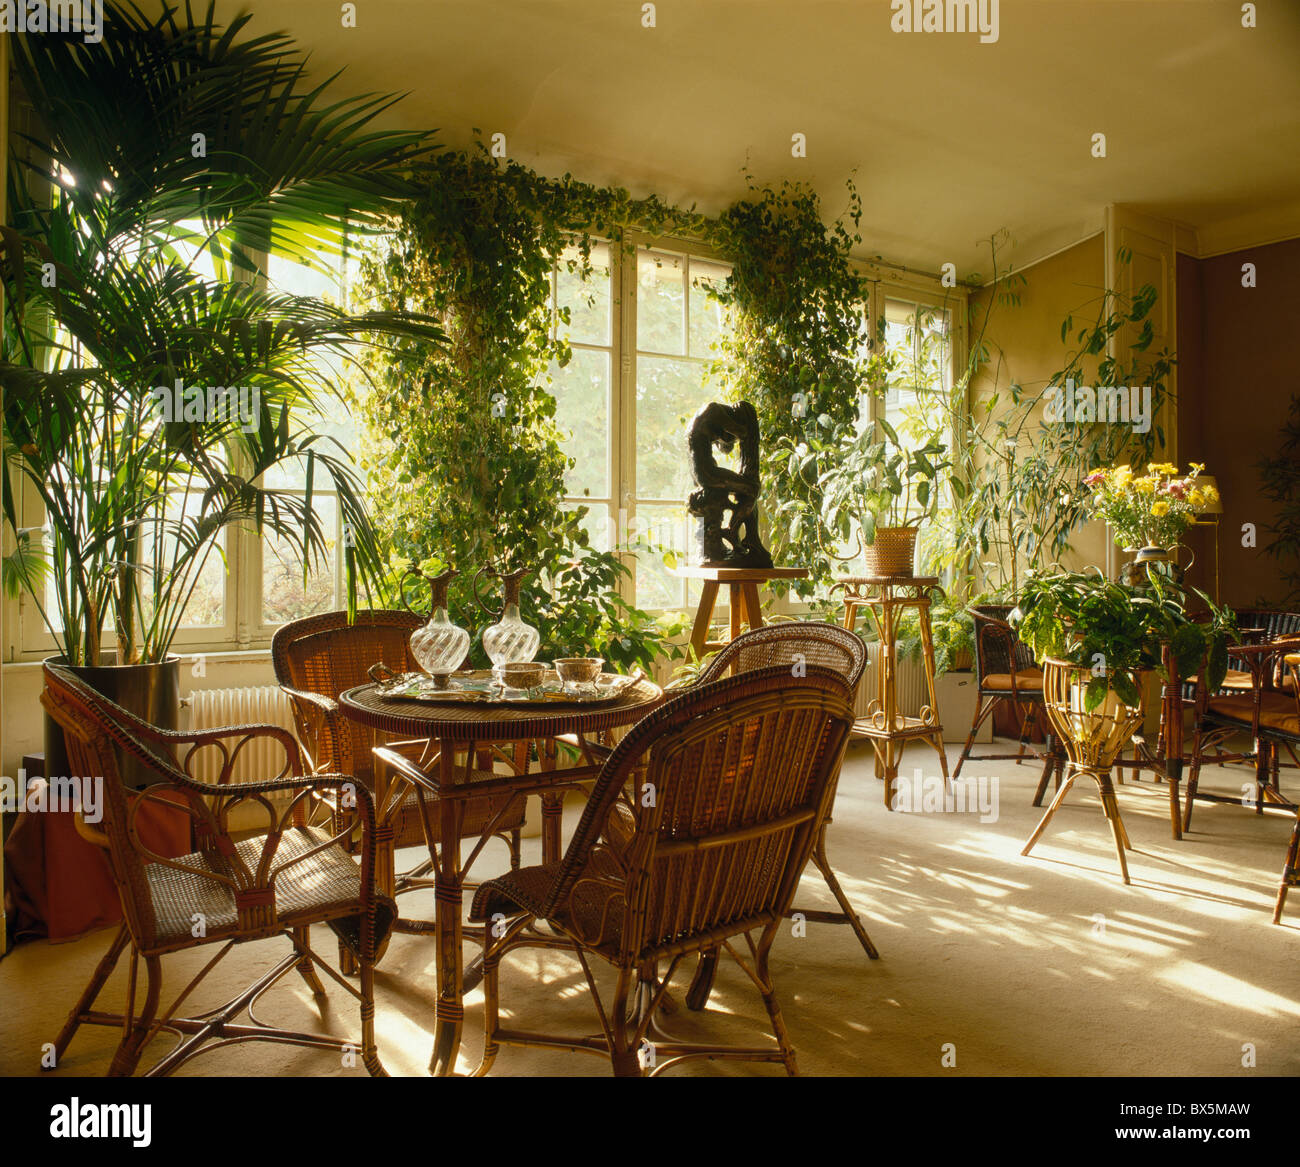 Tall green et palmiers plantes en français townhouse salle à manger avec chaises en rotin Banque D'Images